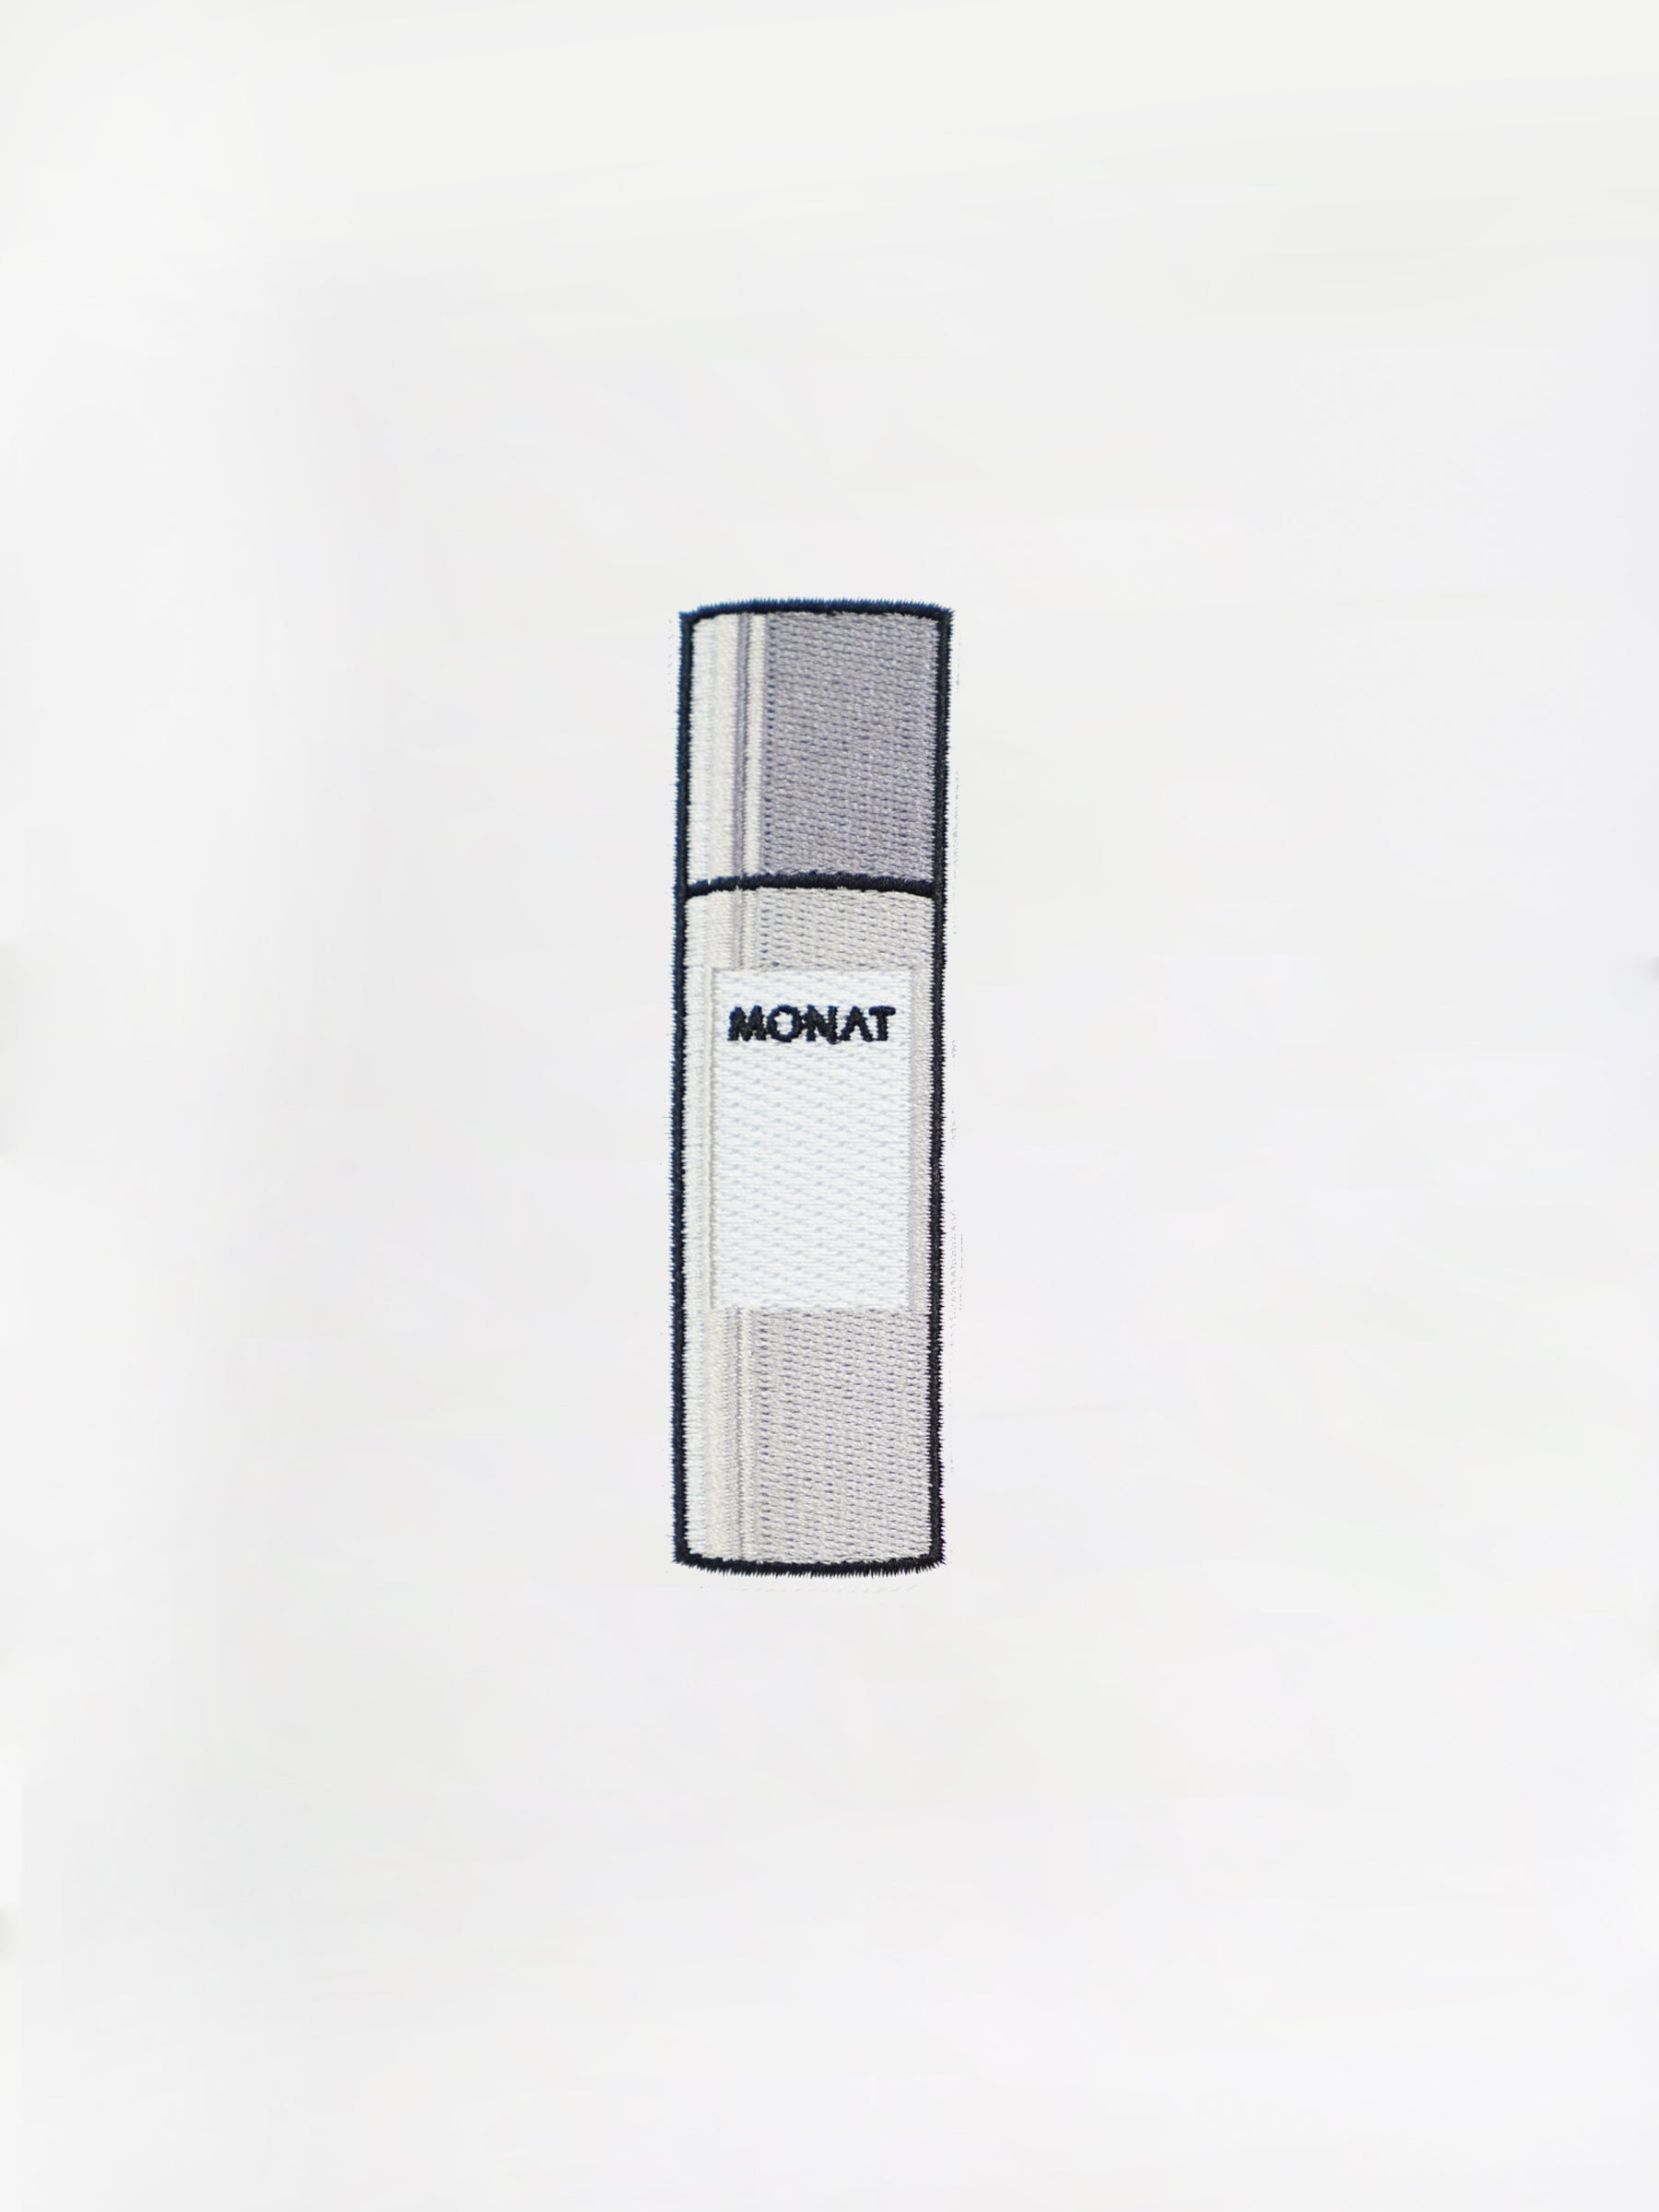 MONAT Bottle Patch- Gray